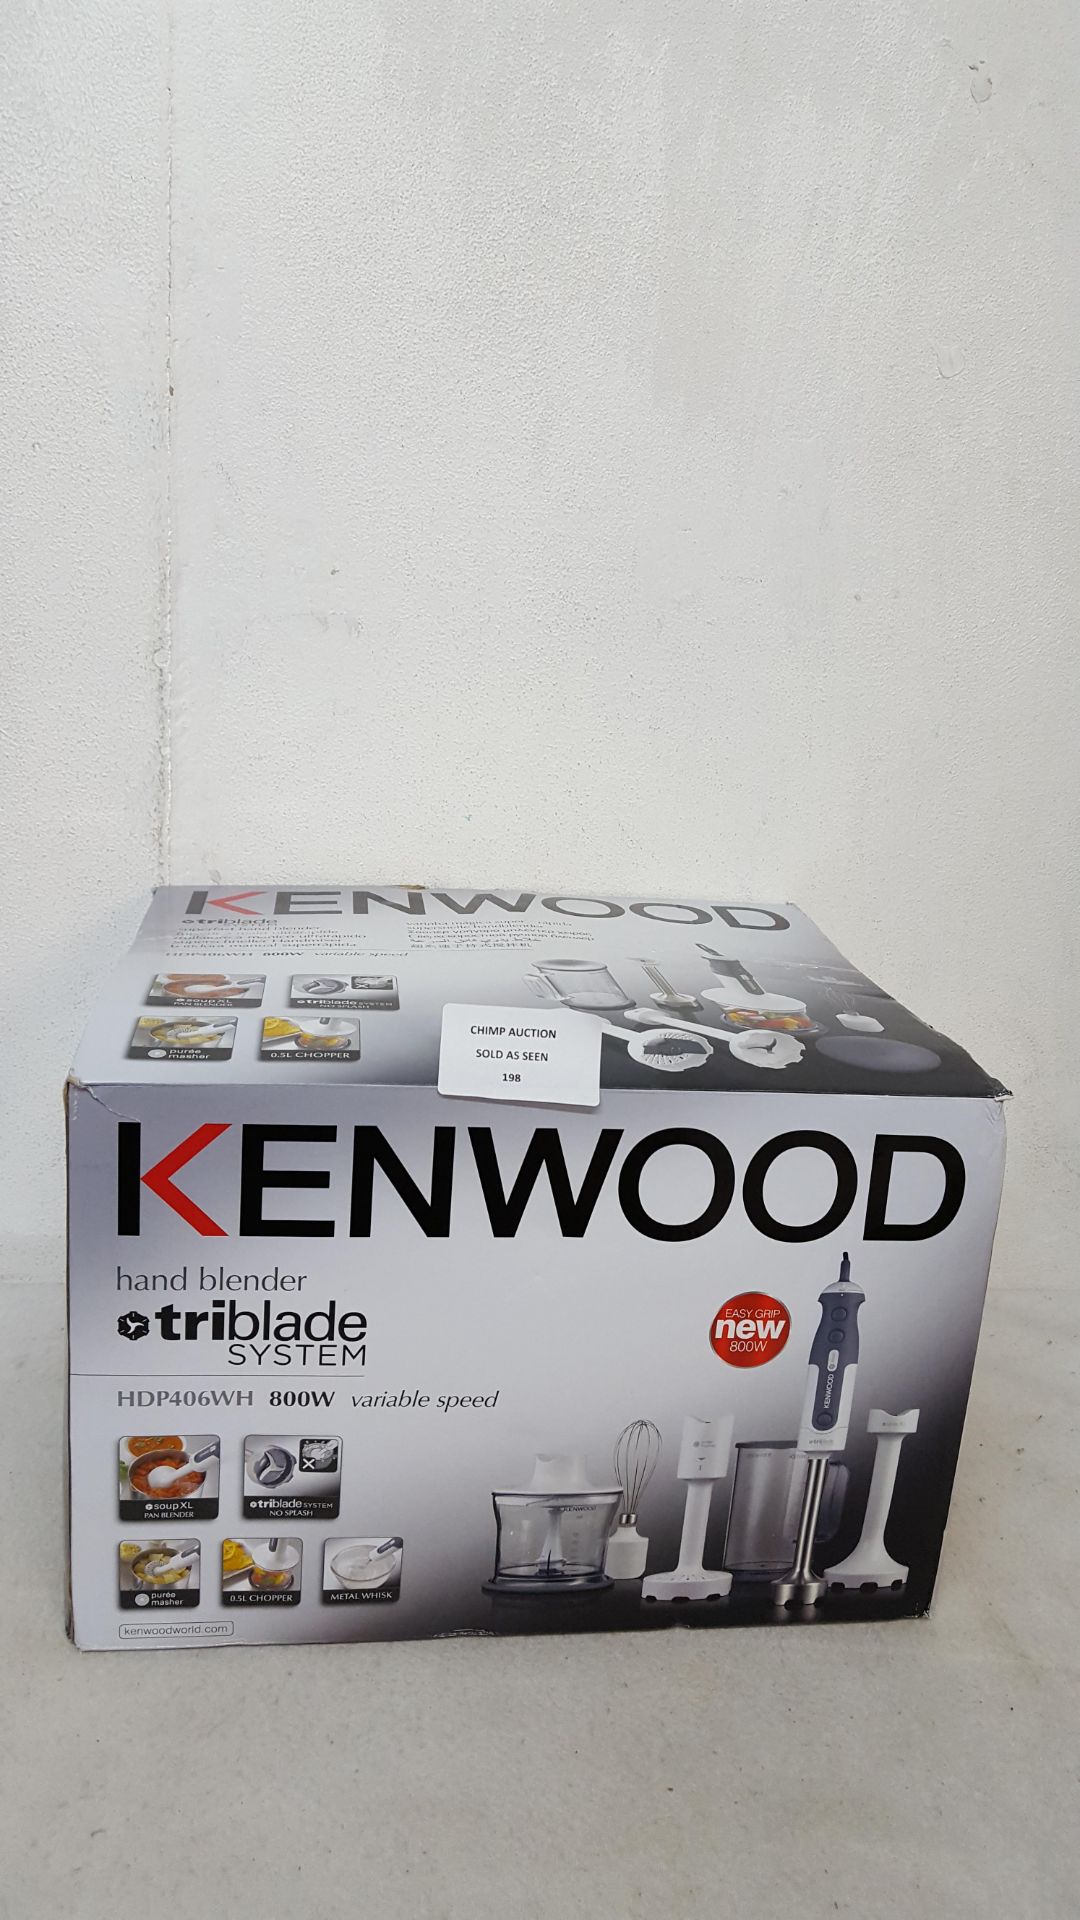 KENWOOD TRI BLEND SYSTEM HAND BLENDER 800W RRP £129.99